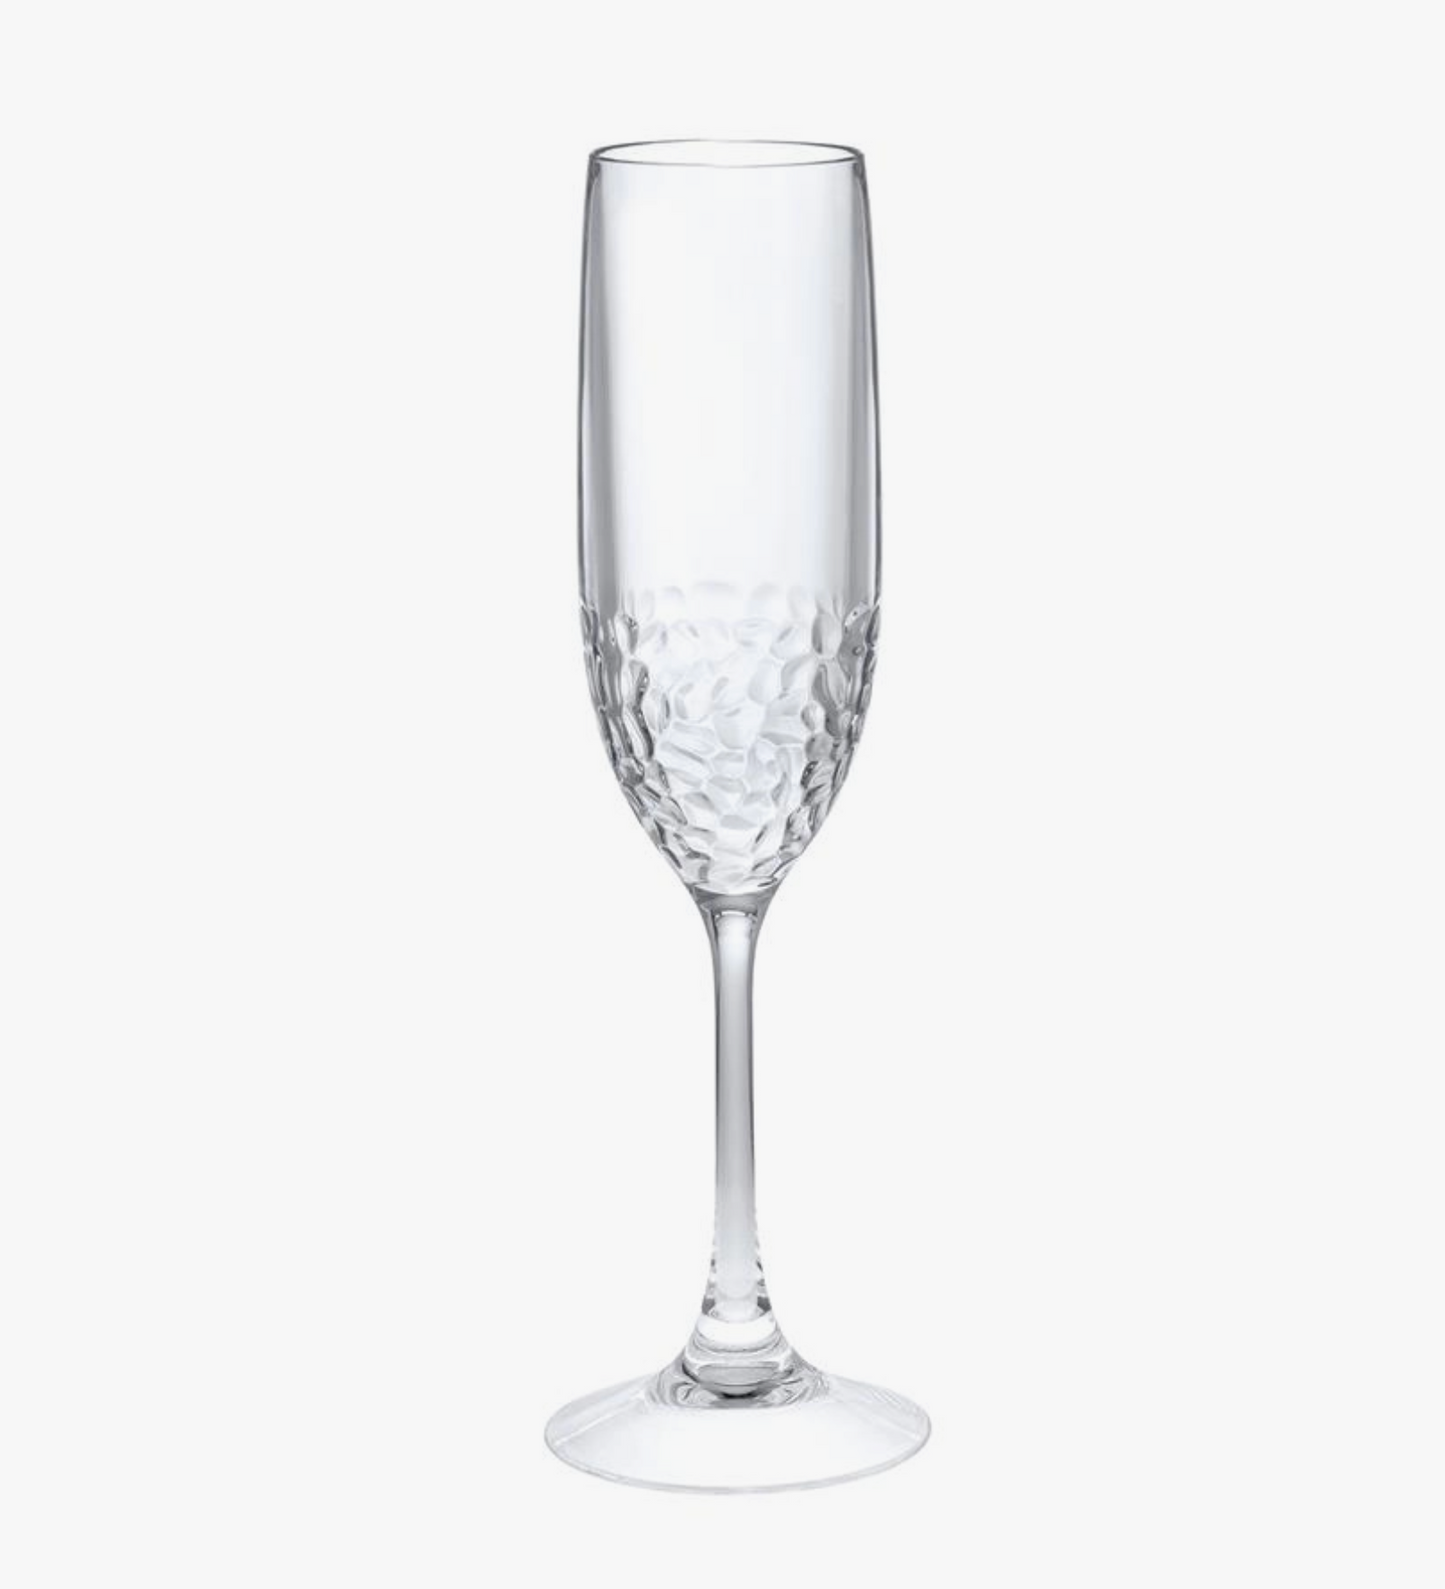 Eclipse Elegance - 6 oz. Hammered Champagne Flute (Set of 2)